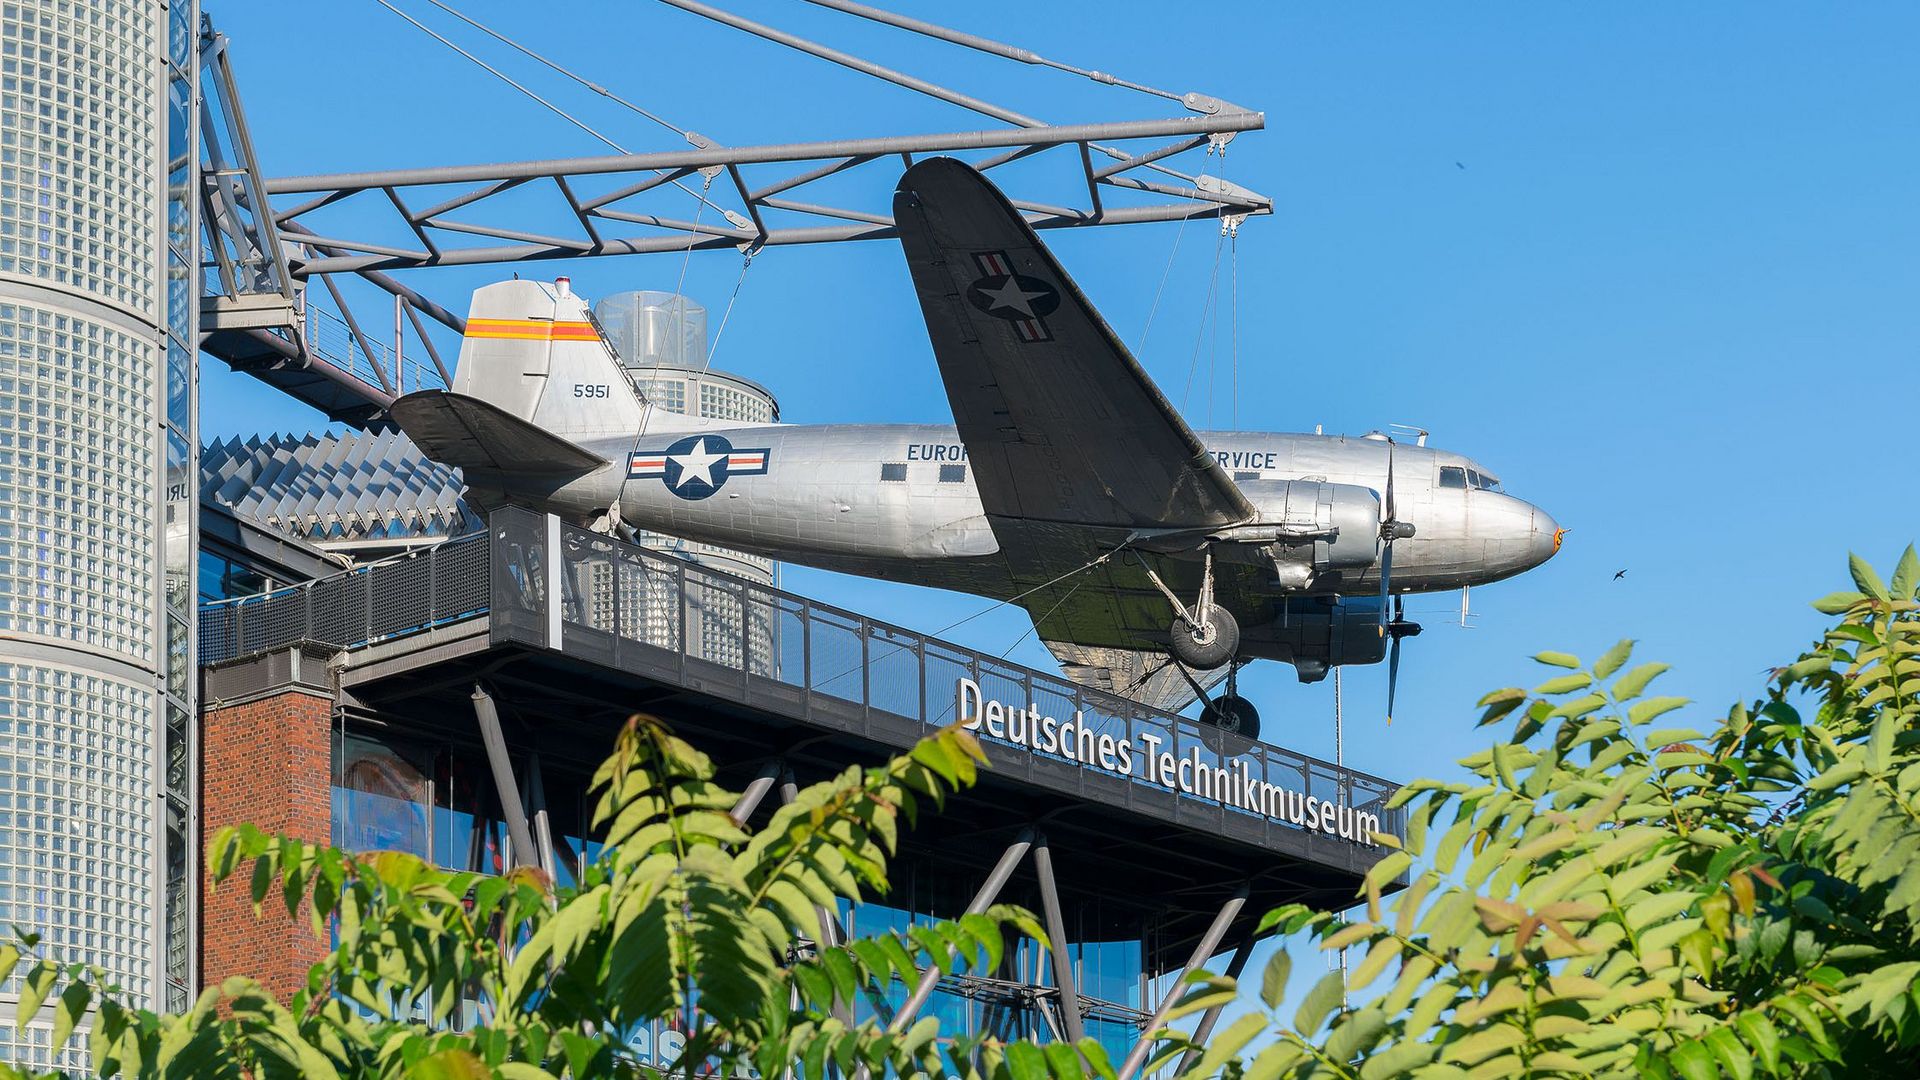 Ein Neubaugebäude mit Glasfassade. An einer Stahlkonstruktion auf dem Dach hängt ein Flugzeug. Unter dem Flugzeug hängt eine weiße Leuchtschrift „Deutsches Technikmuseum“.